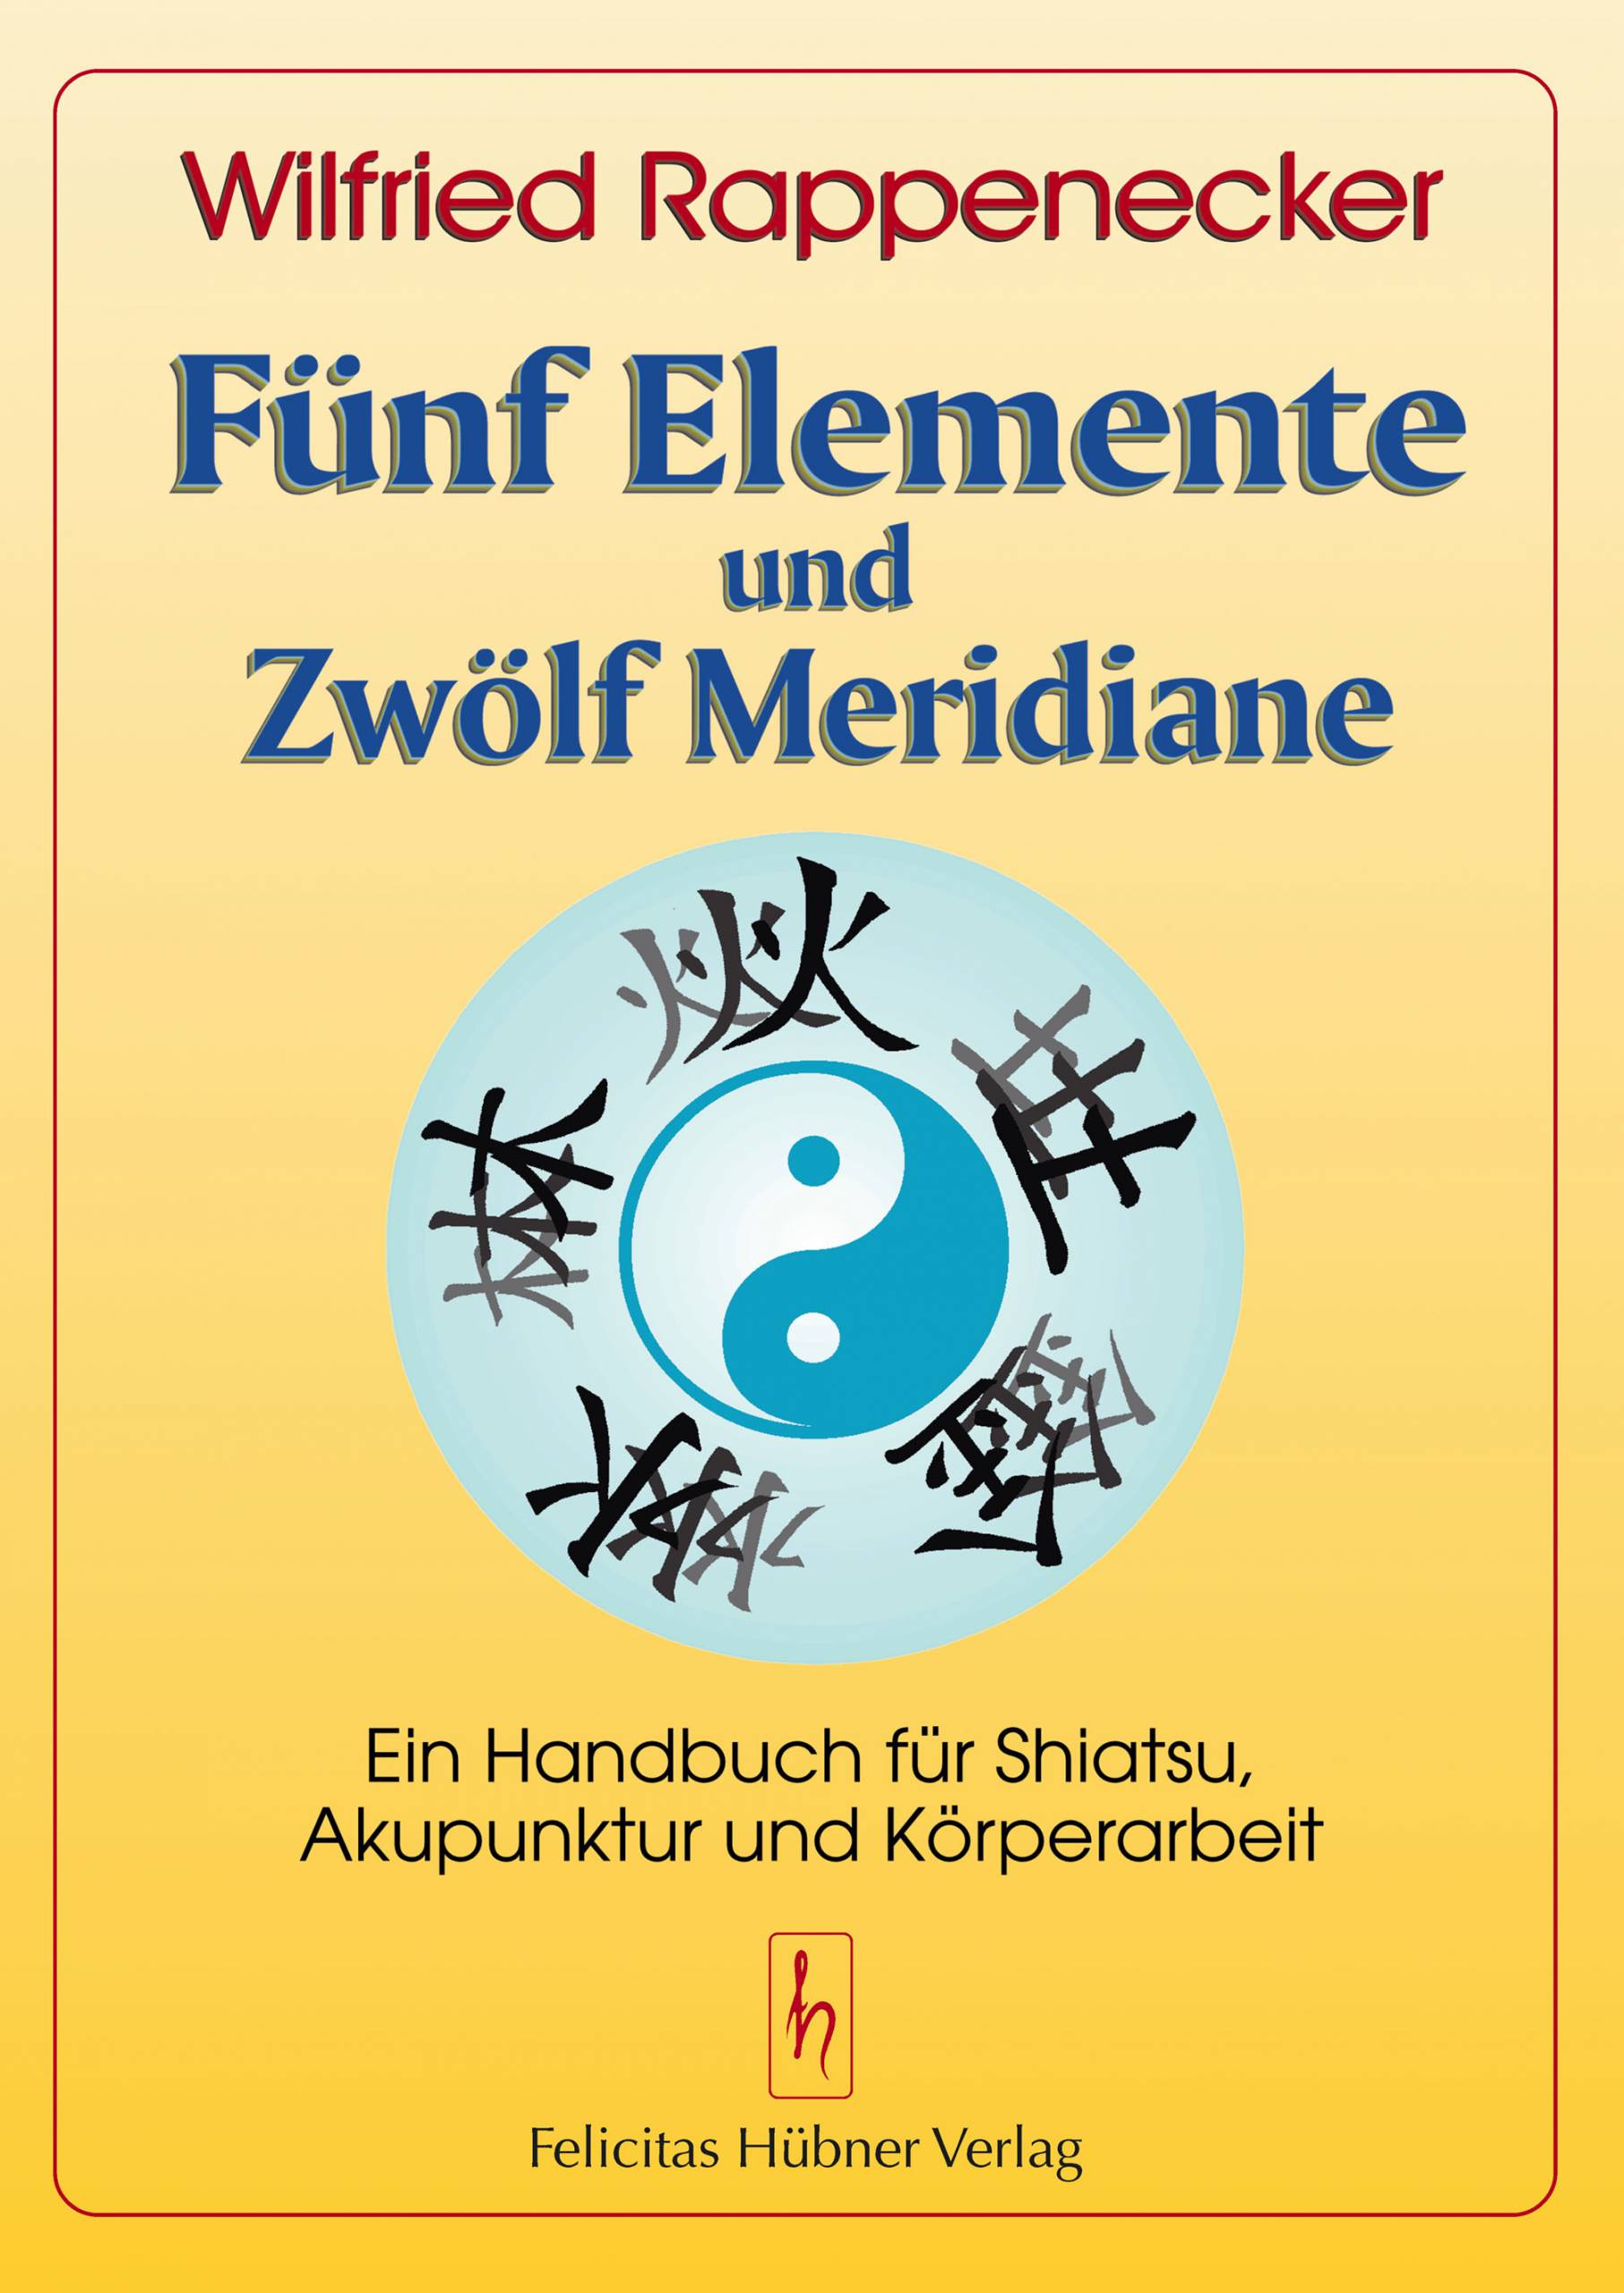 Fünf Elemente und zwölf Meridiane (Rappenecker, Wilfried)